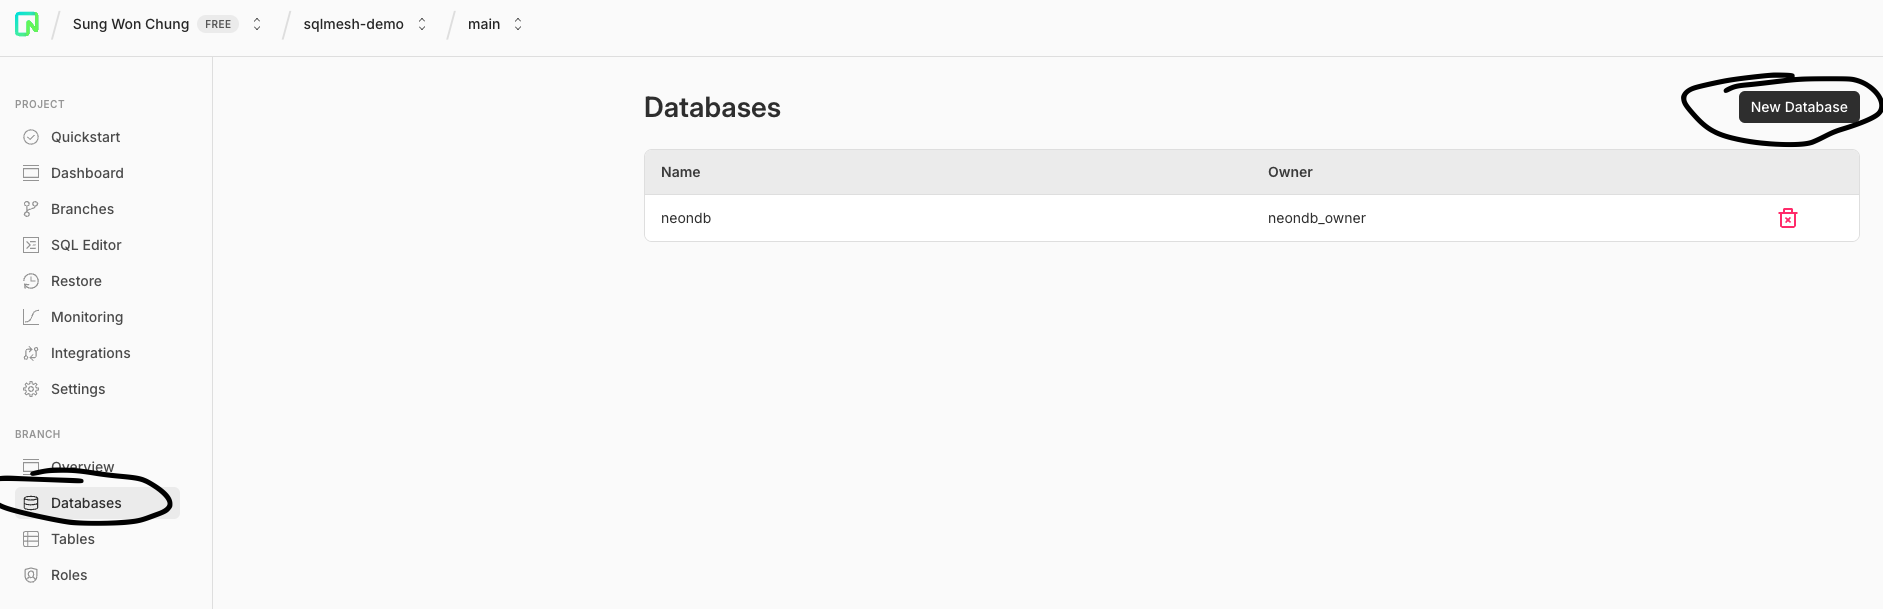 new_database